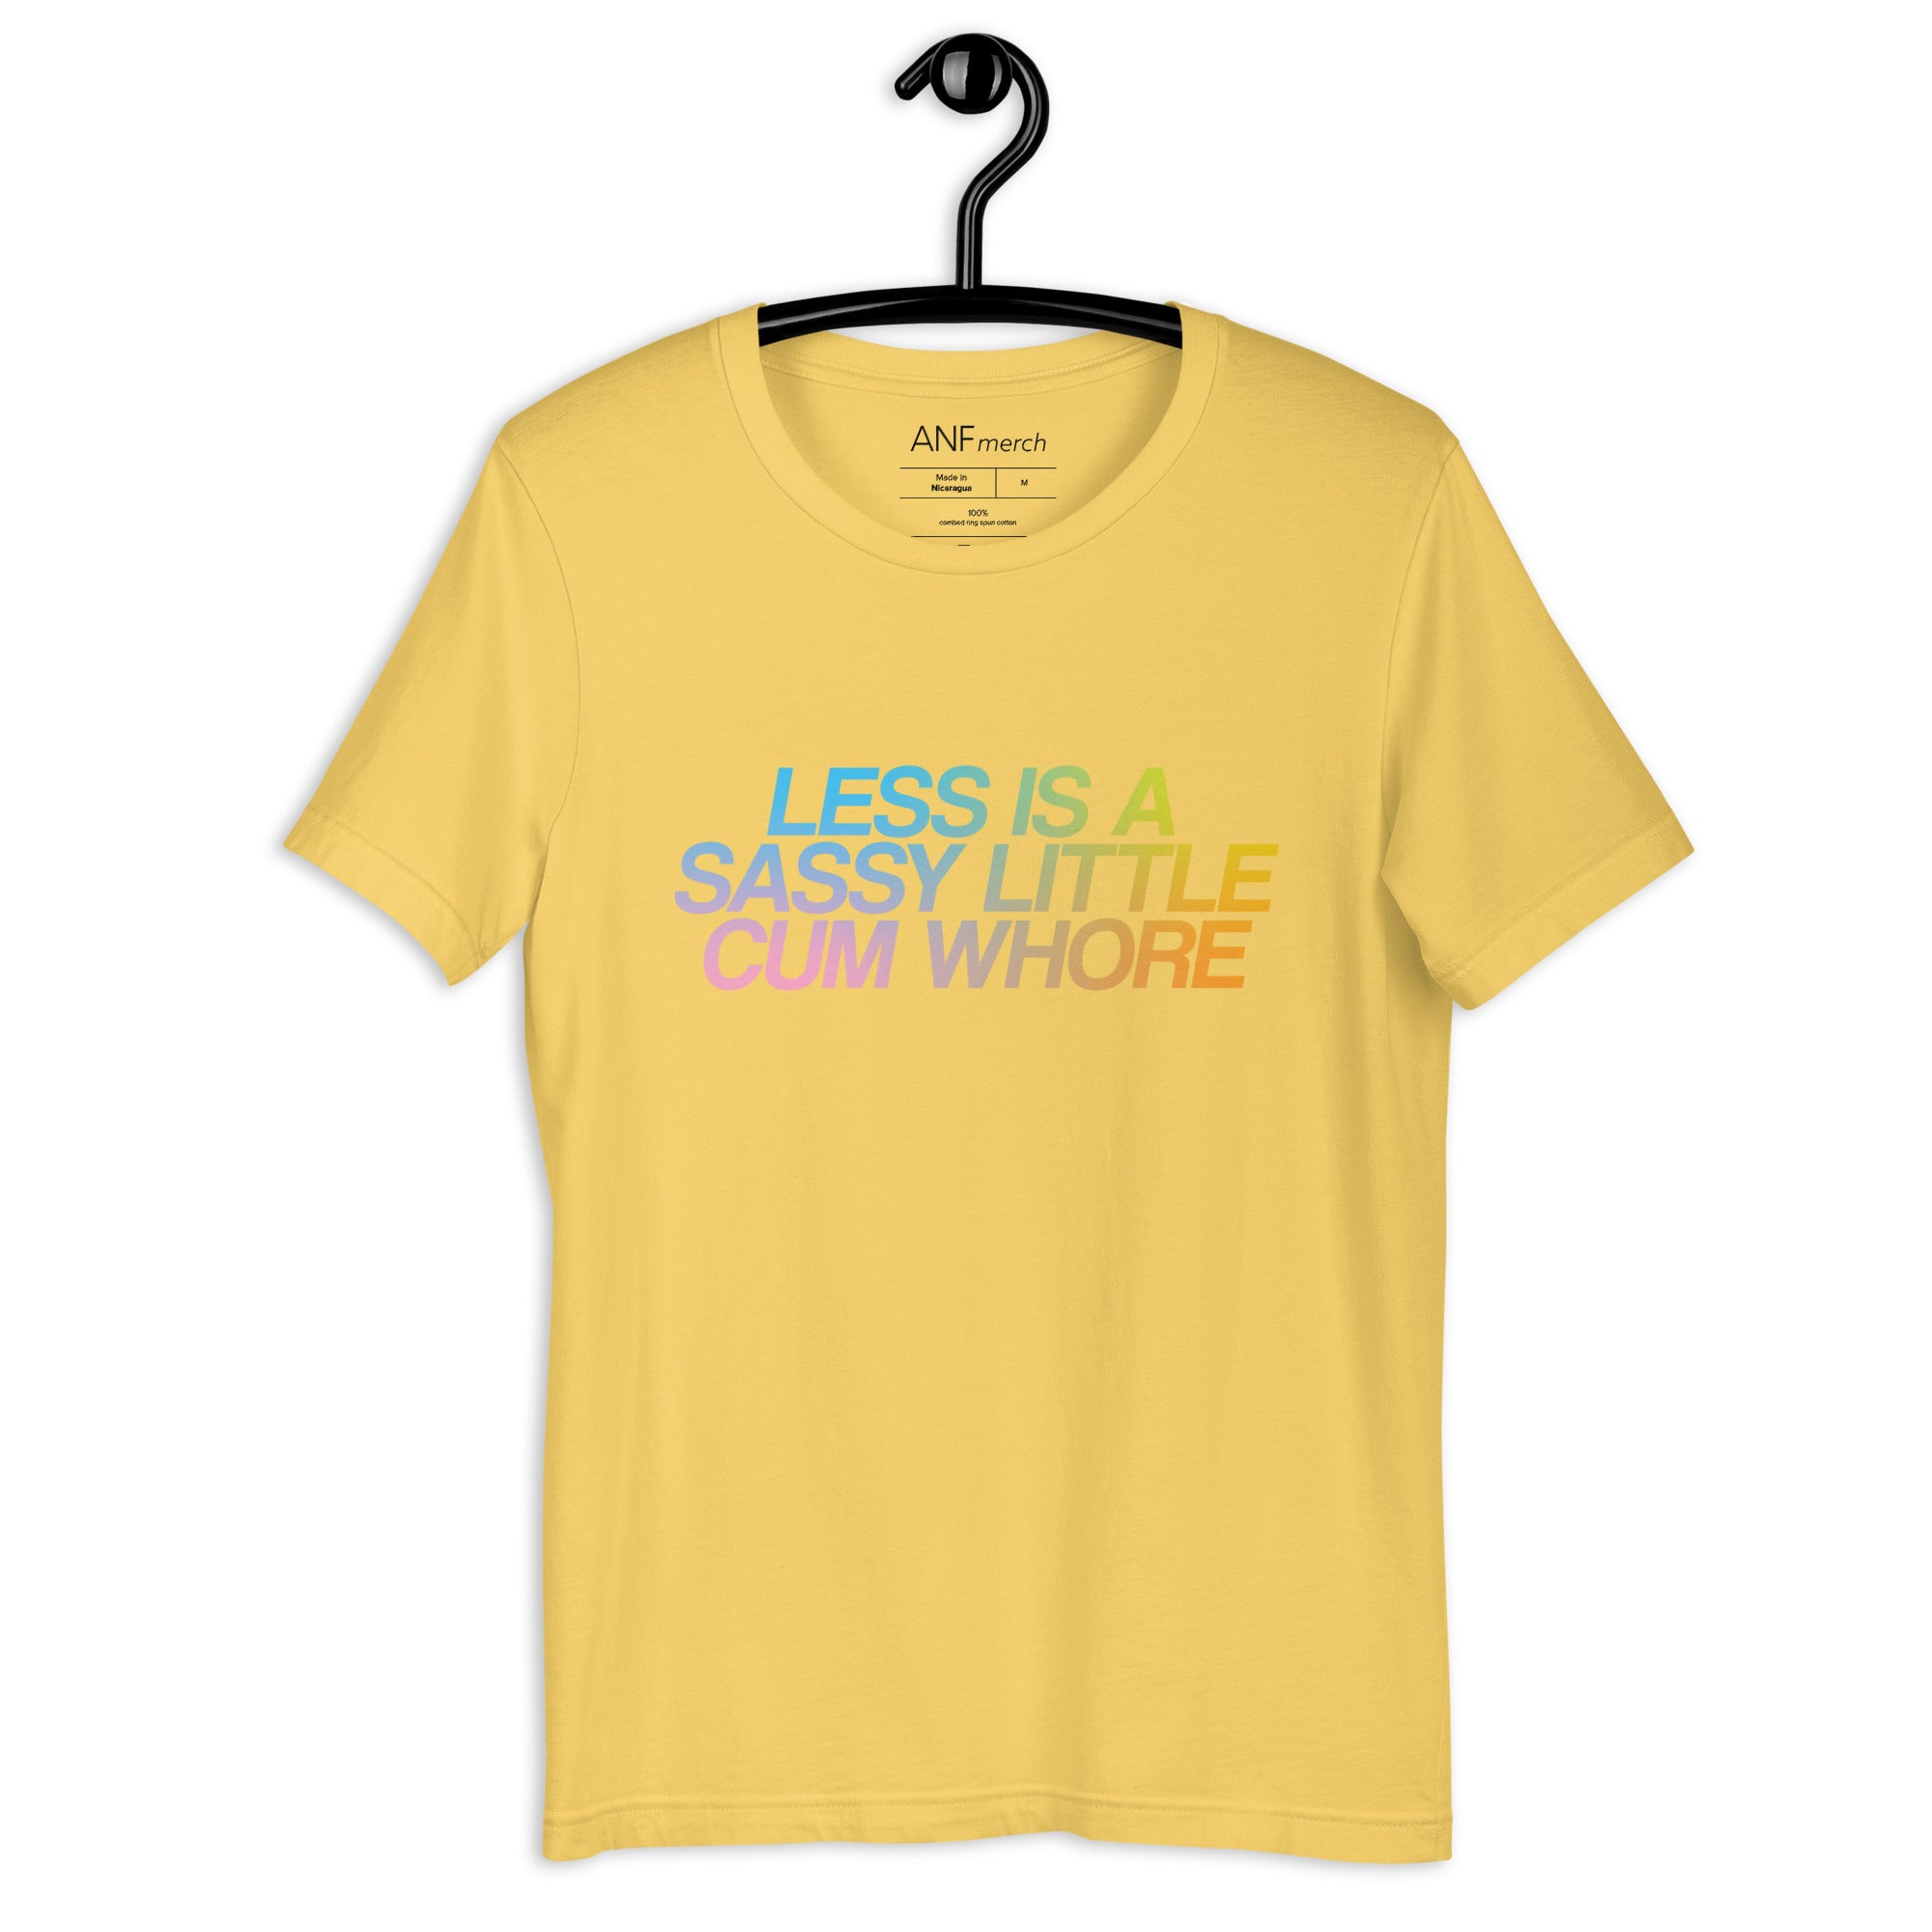 Less Is A Sassy Little Cum Whore Gradient Unisex T-Shirt